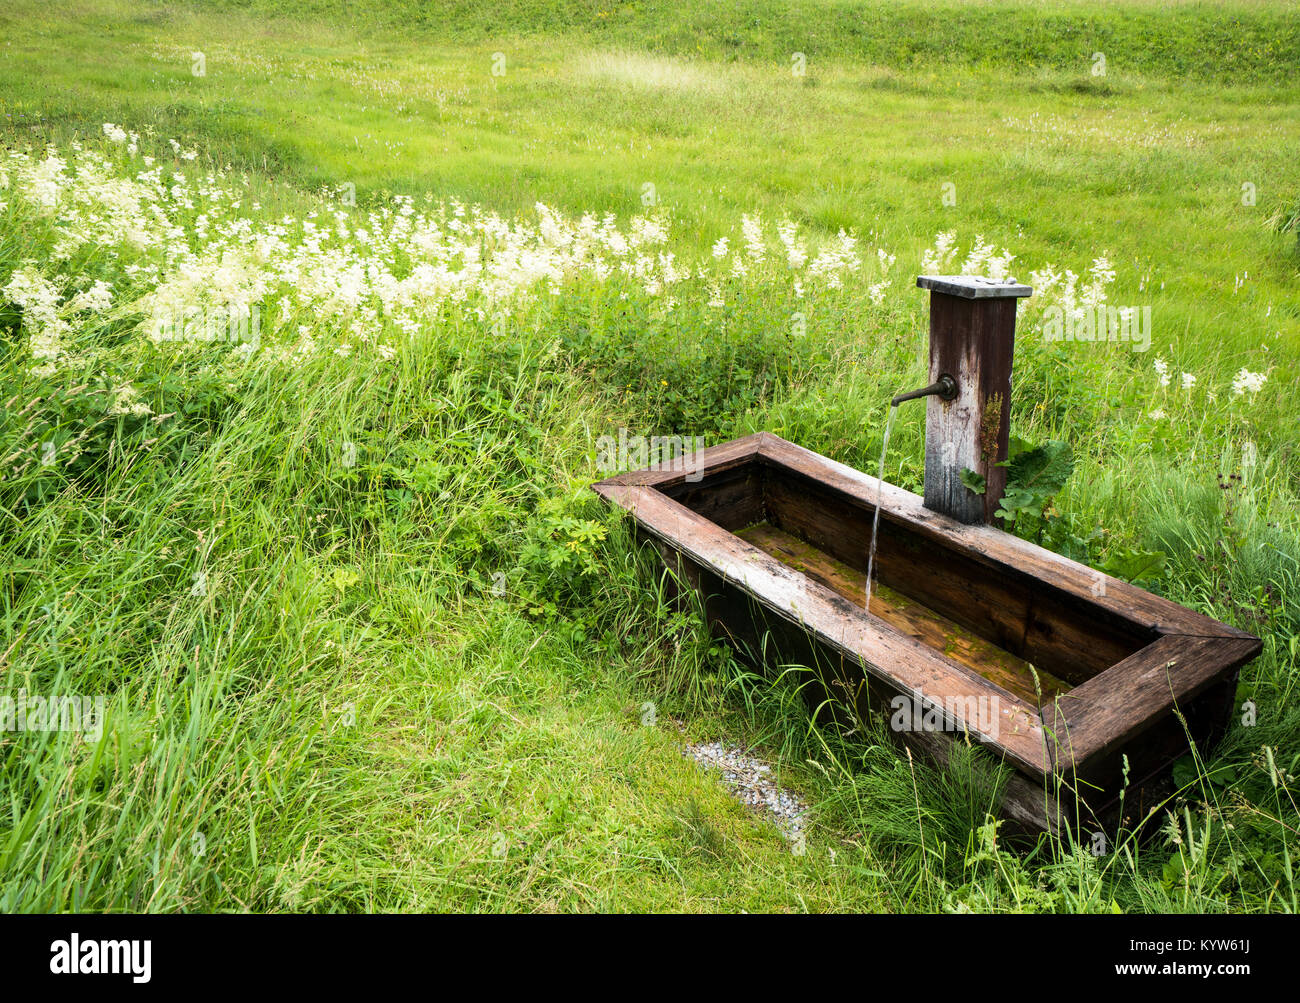 Hermosa fuente de madera y muelle en medio de un verde prado con flores silvestres Foto de stock